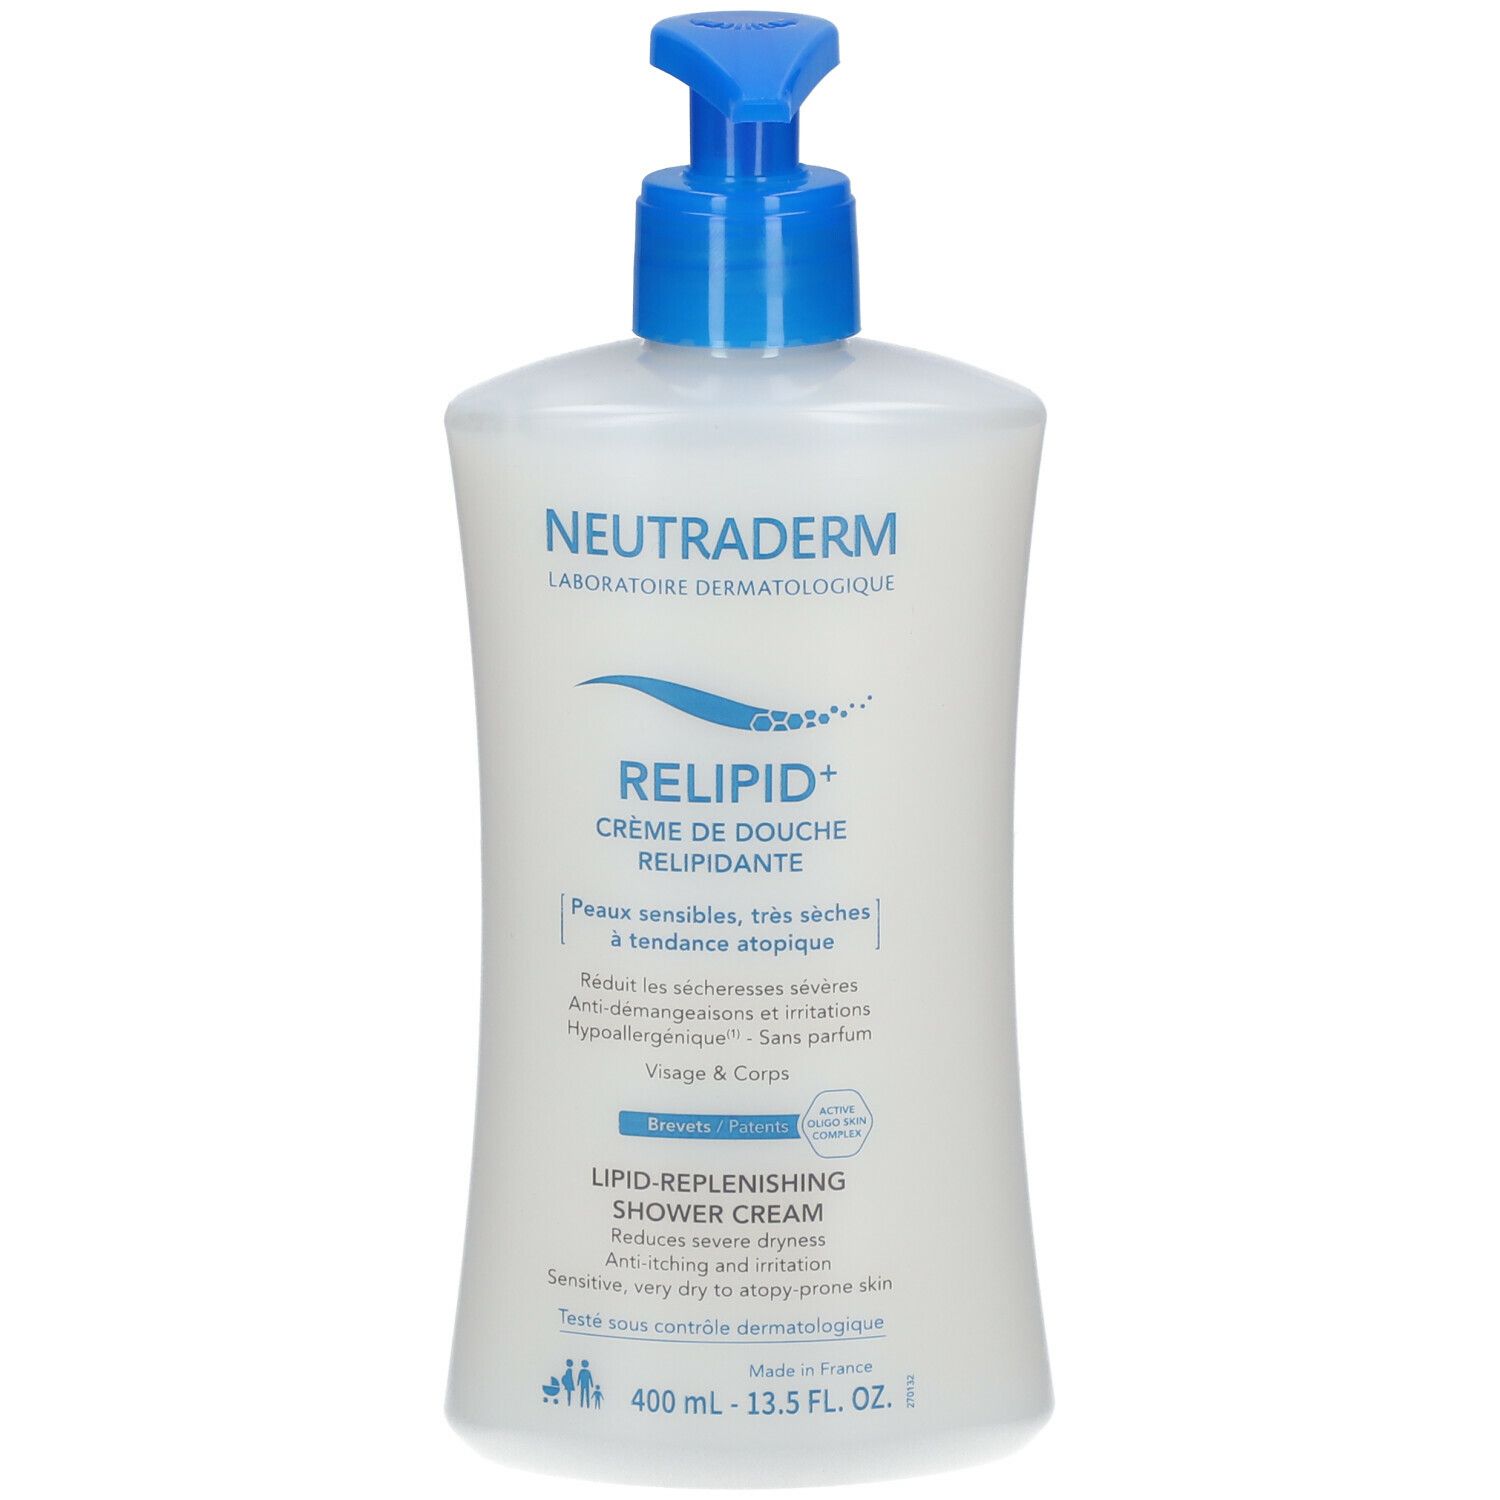 Neutraderm Relipid+ Crème de Douche Relipidante